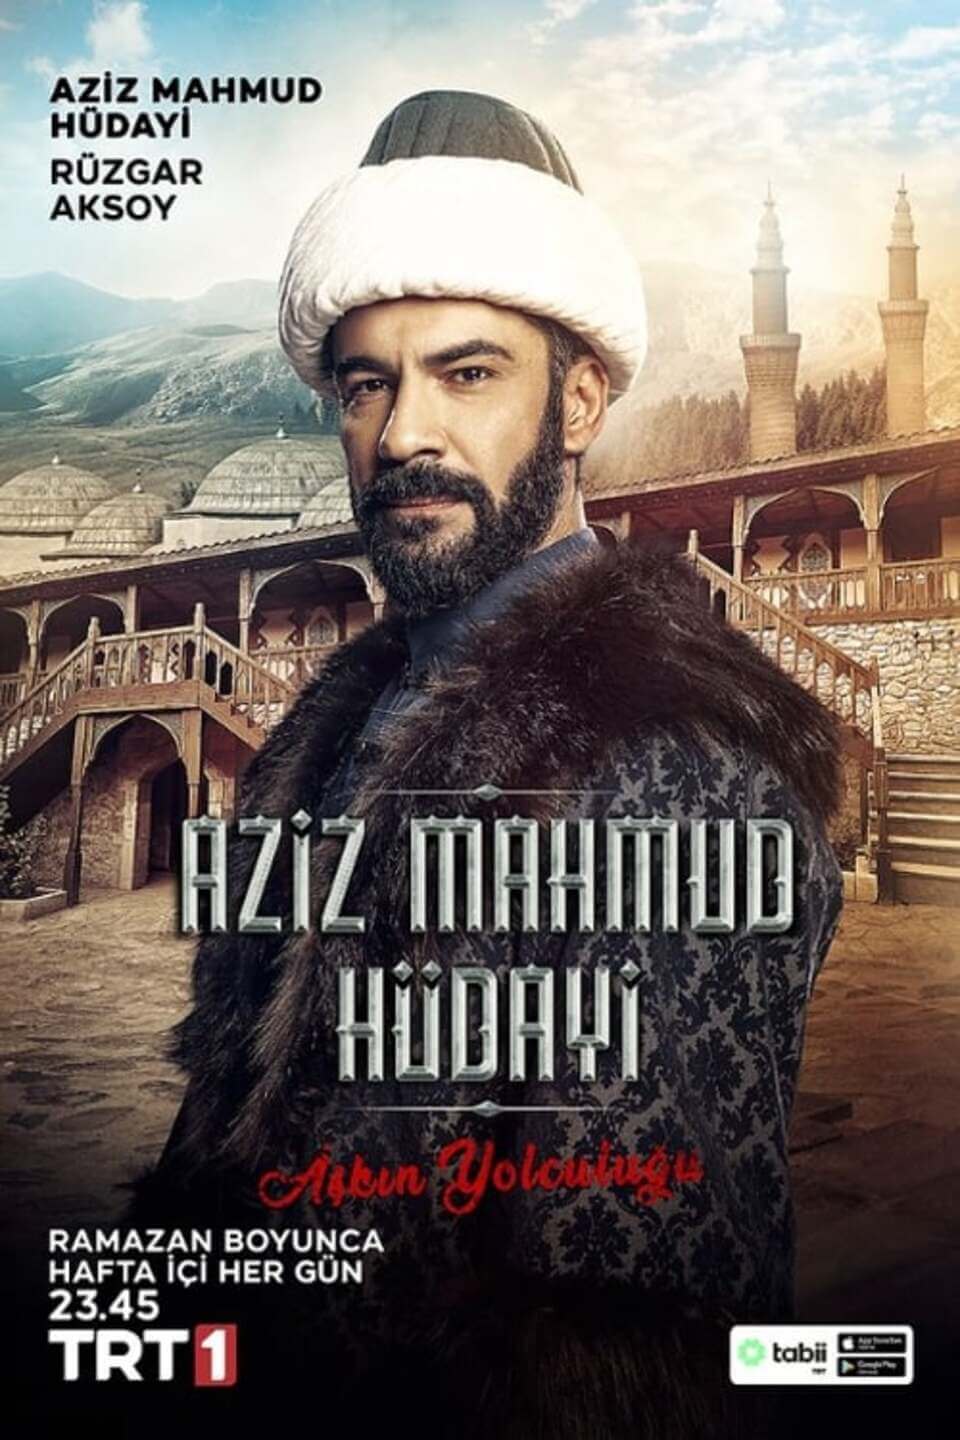 TV ratings for Aziz Mahmud Hüdayi: Aşkın Yolculuğu in Italy. TRT 1 TV series